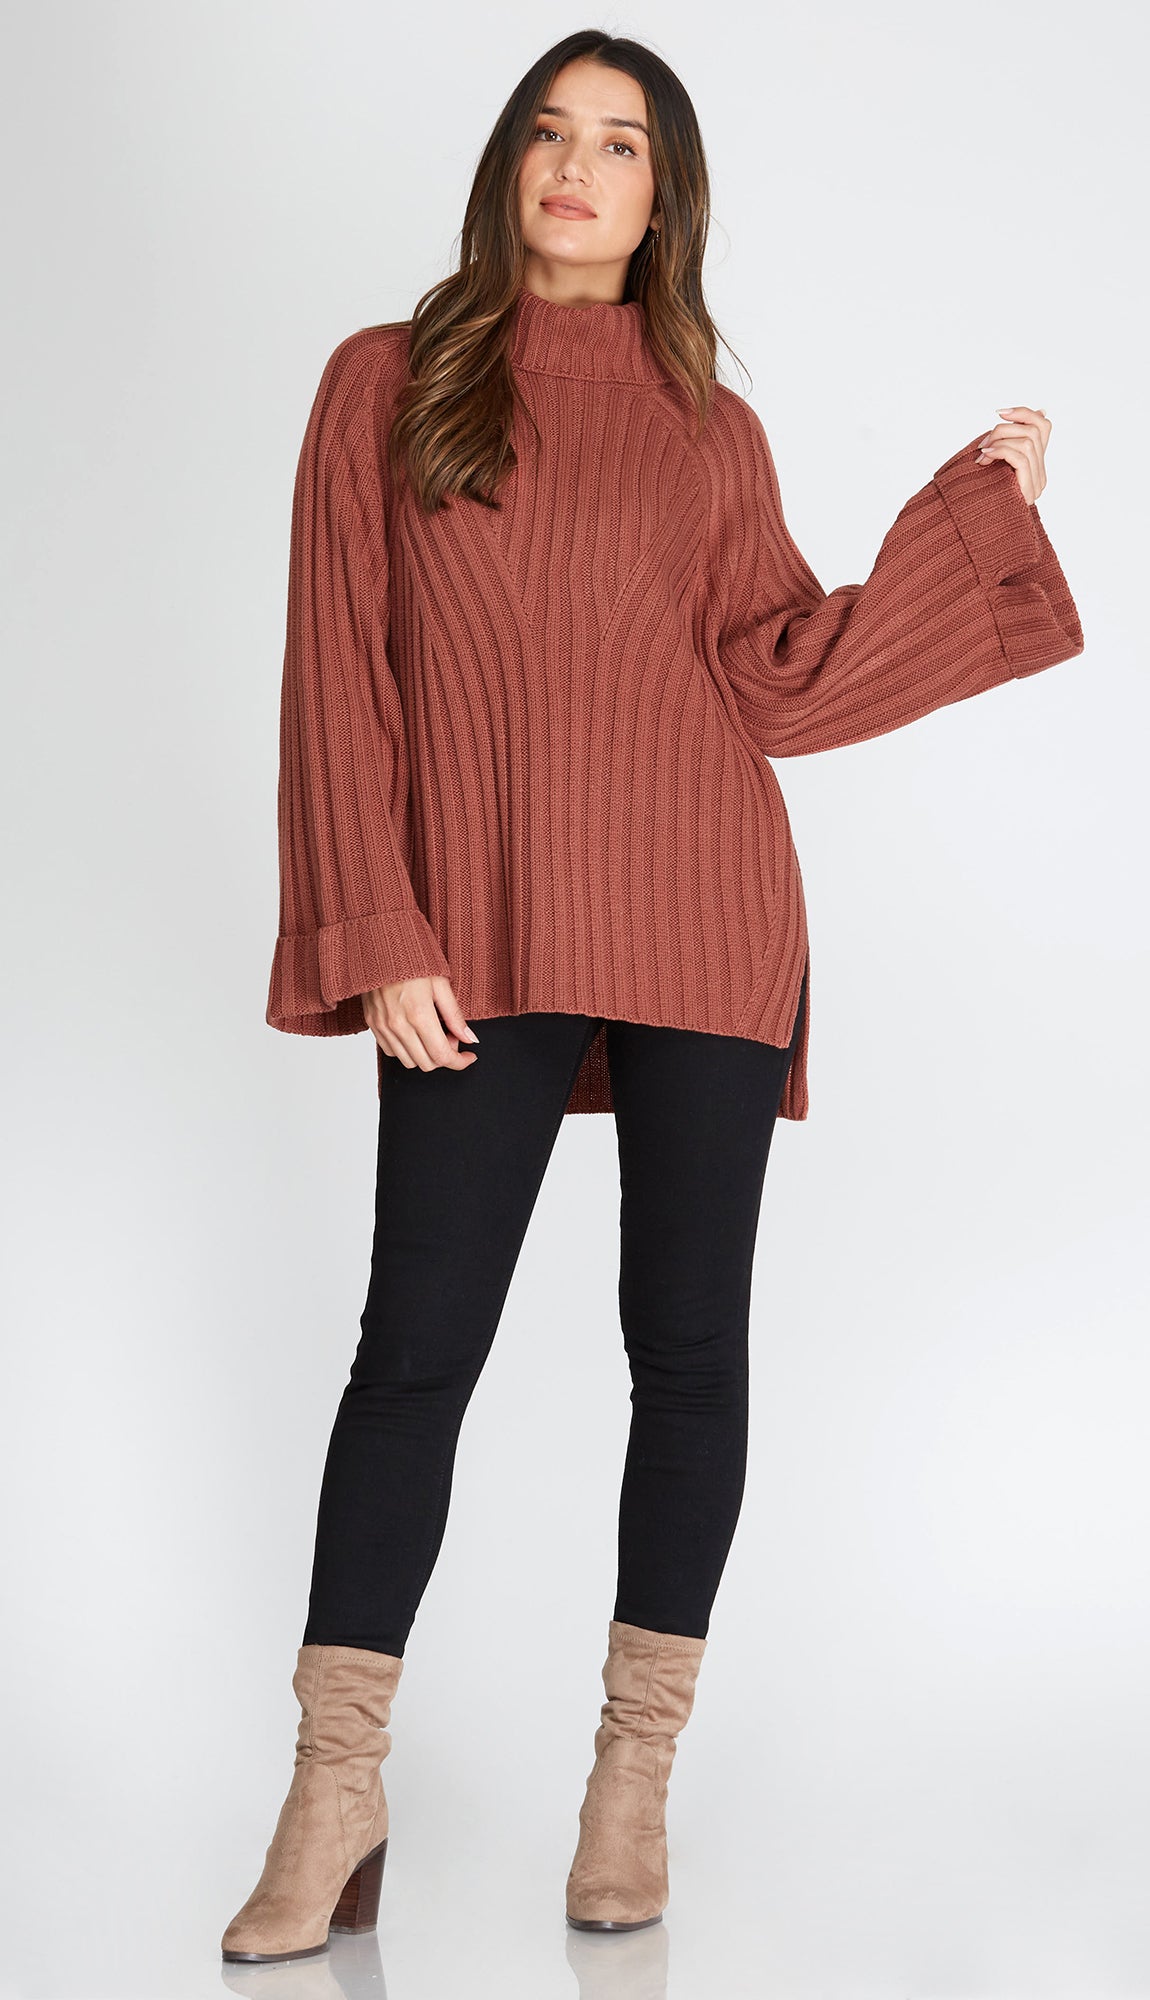 Fallon Wide Cuff Sleeve Turtleneck Sweater- Mocha